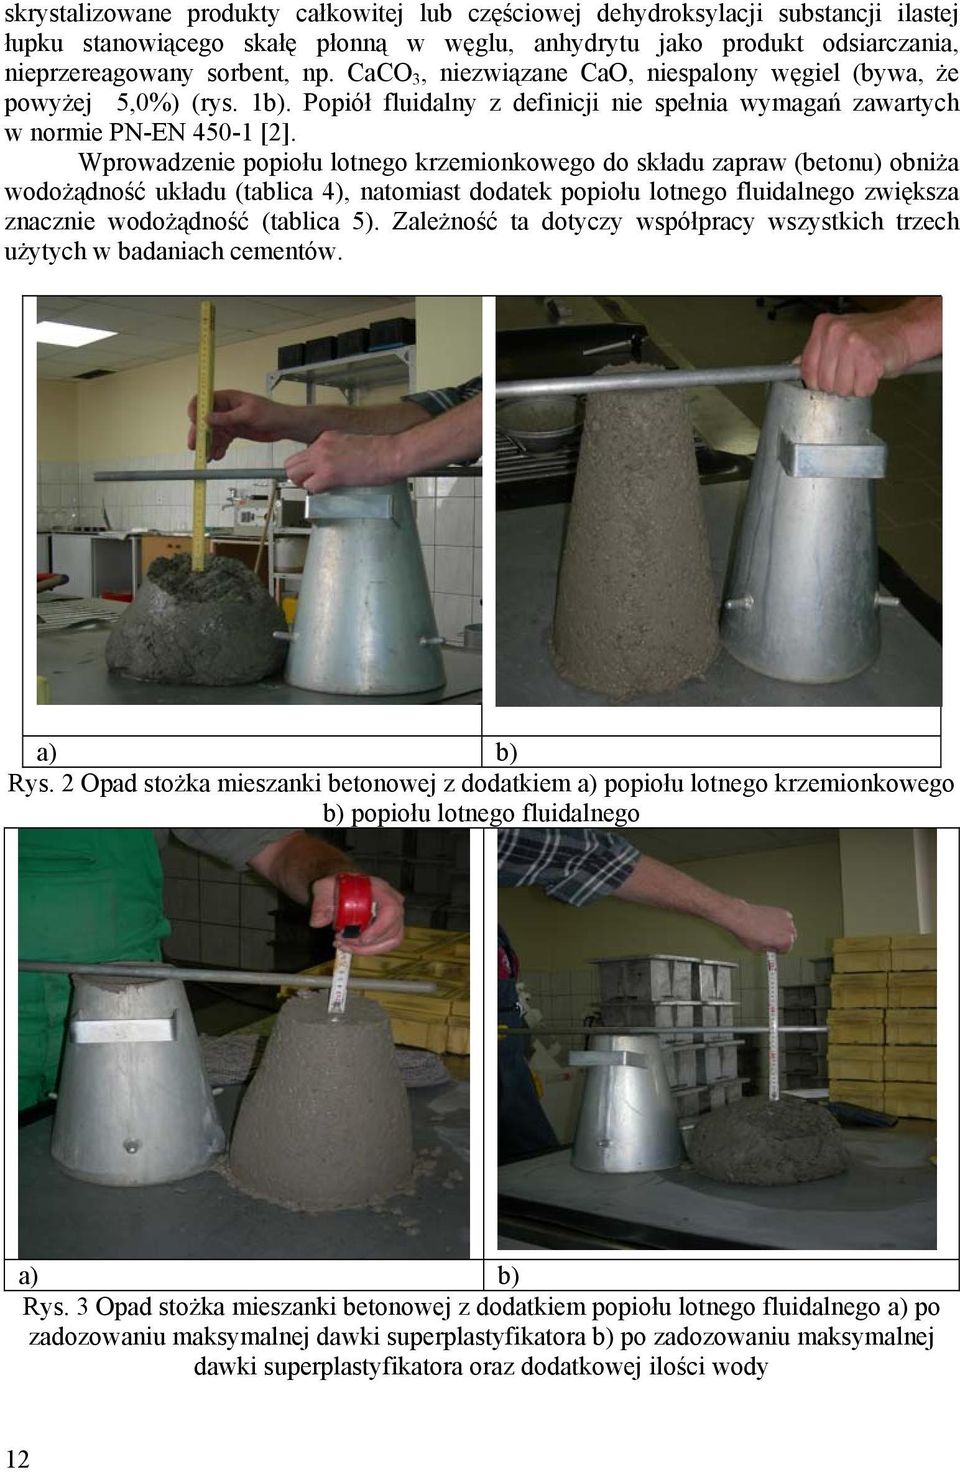 Wprowadzenie popiołu lotnego krzemionkowego do składu zapraw (betonu) obniża wodożądność układu (tablica 4), natomiast dodatek popiołu lotnego fluidalnego zwiększa znacznie wodożądność (tablica 5).